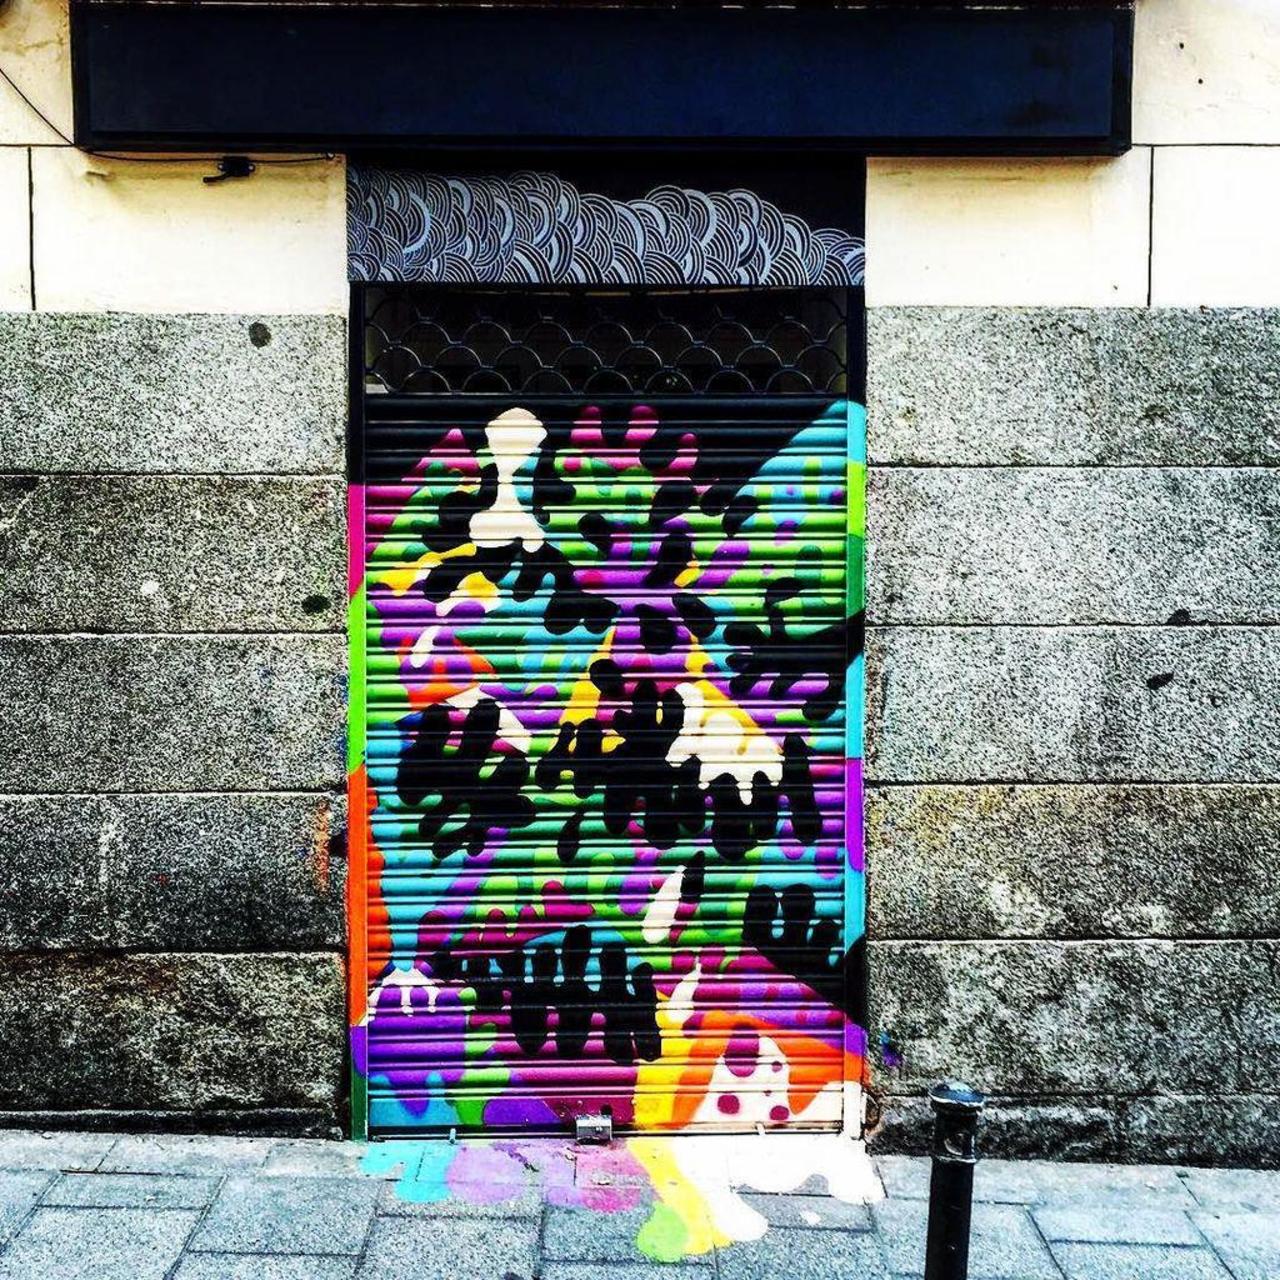 #Madrid #igersmadrid #graffiti #graffitimadrid #instagraffiti #streetart #streetartmadrid #Spain #España #arteurban… http://t.co/VTHQ2fogb3